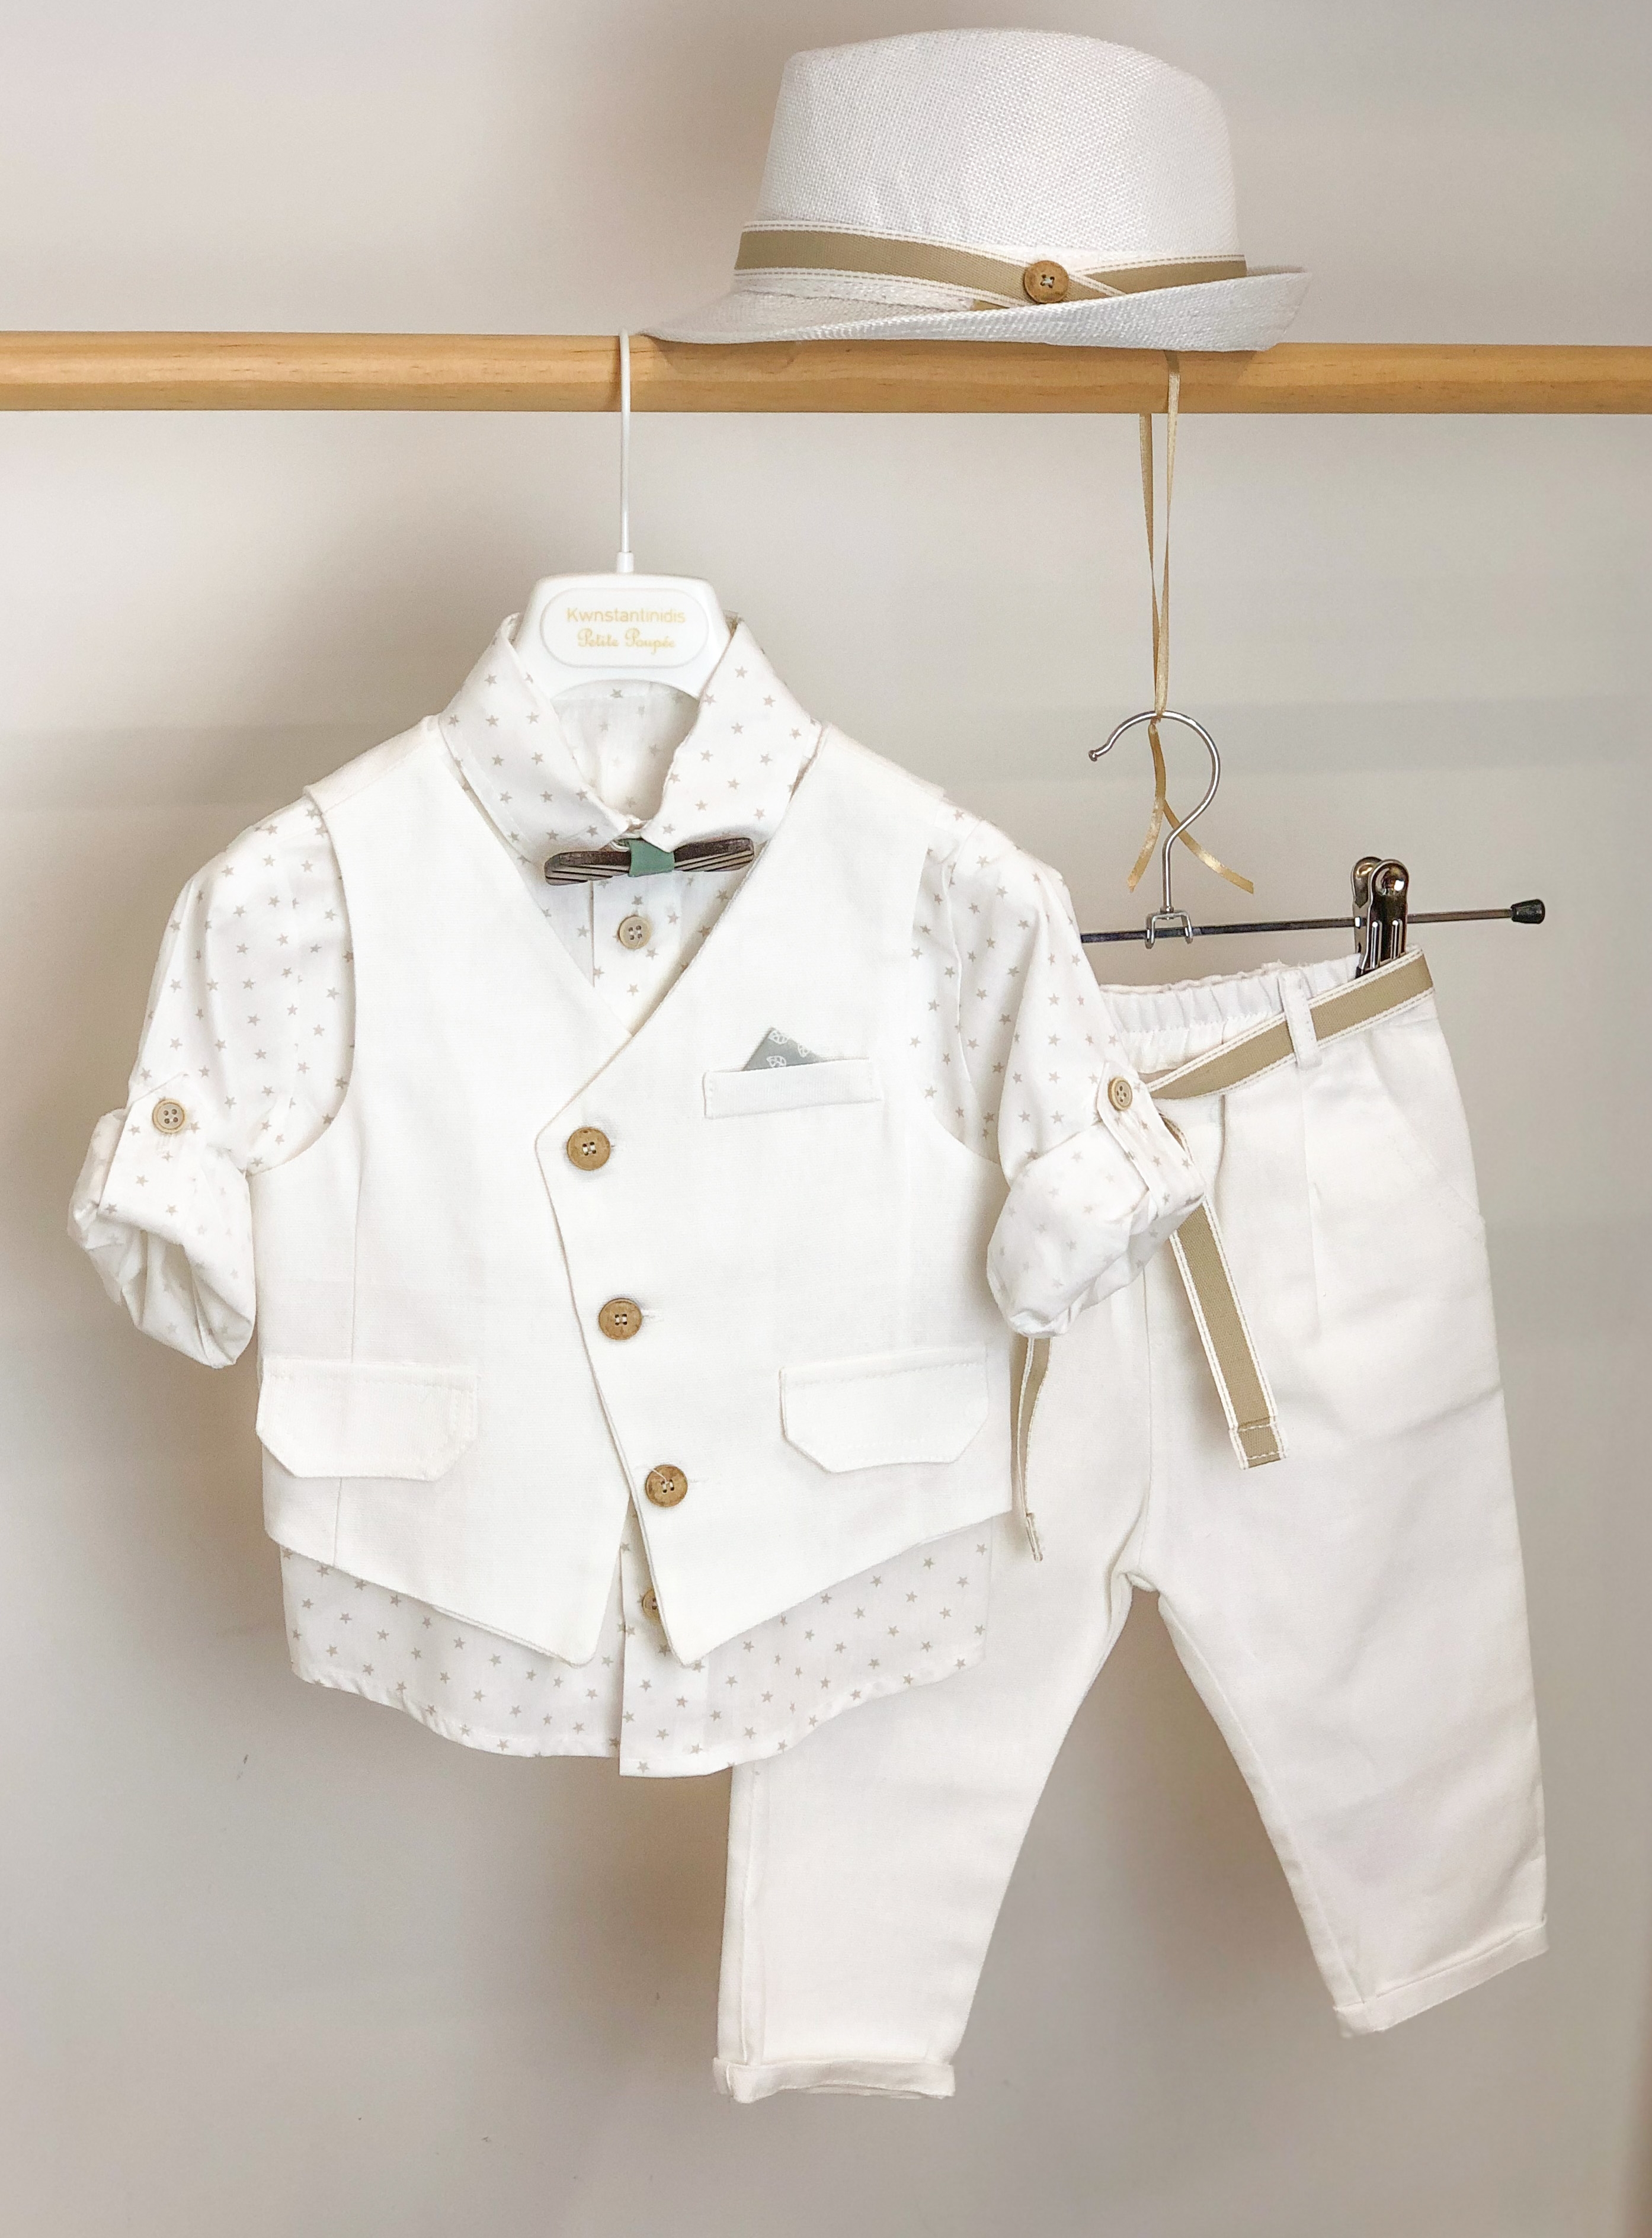 βαπτιστικά ρούχα για αγόρι καλοκαιρινό λευκό μπεζ απλό μοντέρνο ξύλινο παπιγιόν λευκό μπεζ μέντα βάπτιση αγόρι : 1